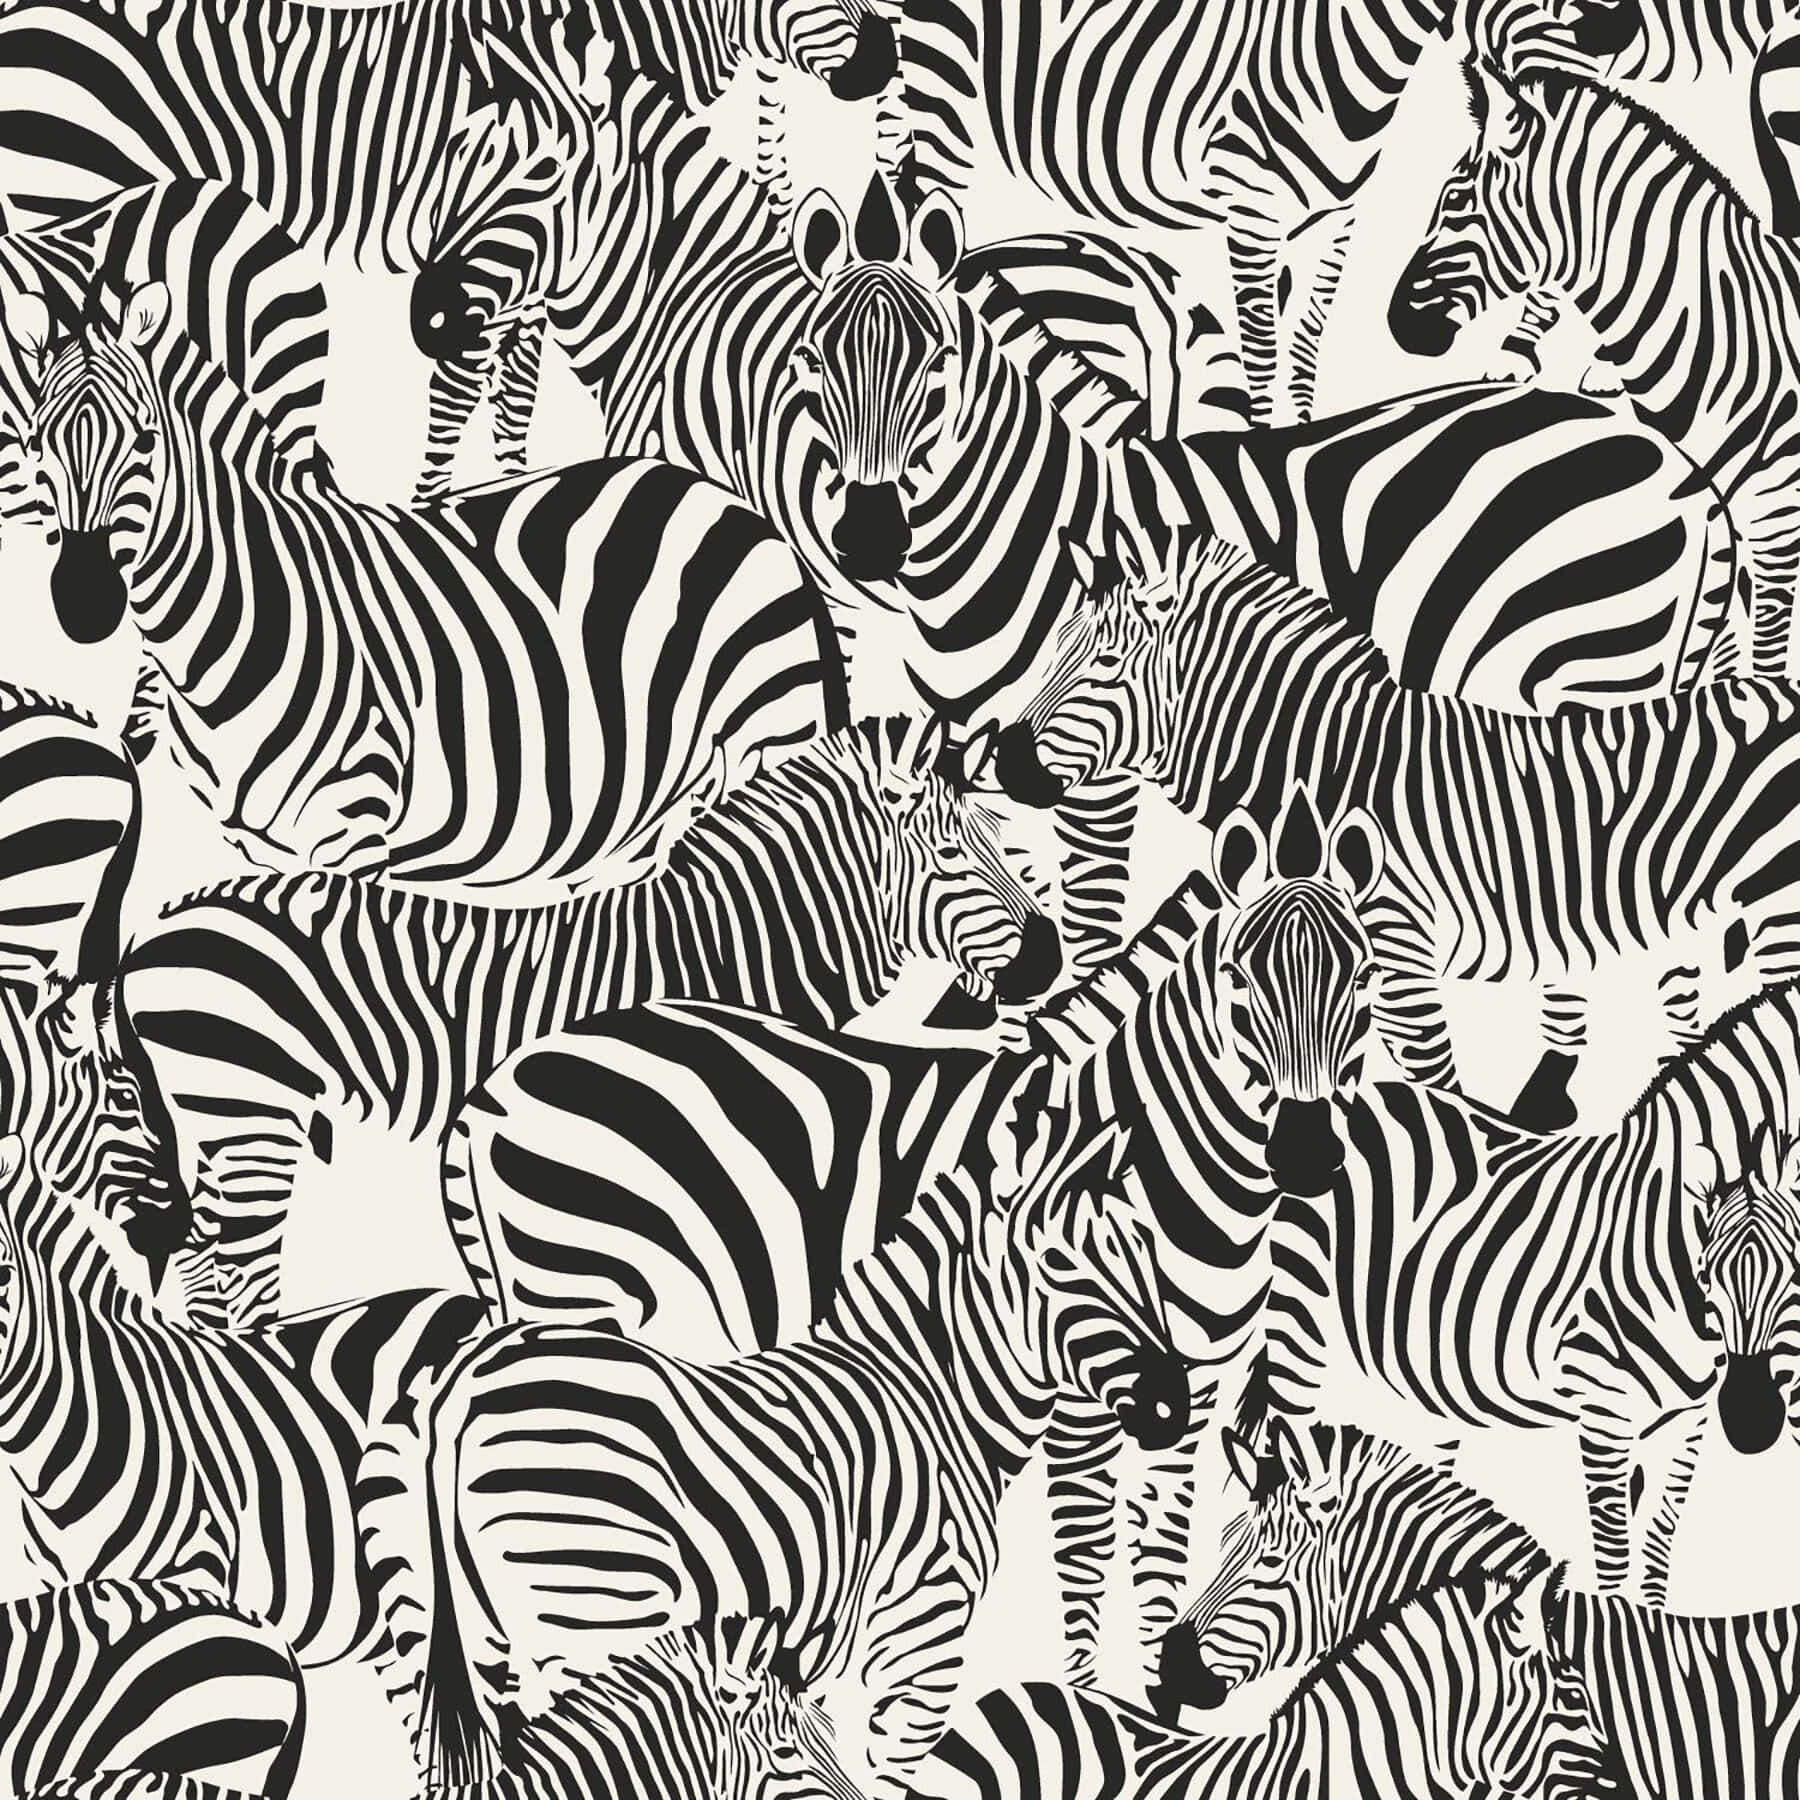 En livlig sort og hvid dyremønsterdesign. Wallpaper